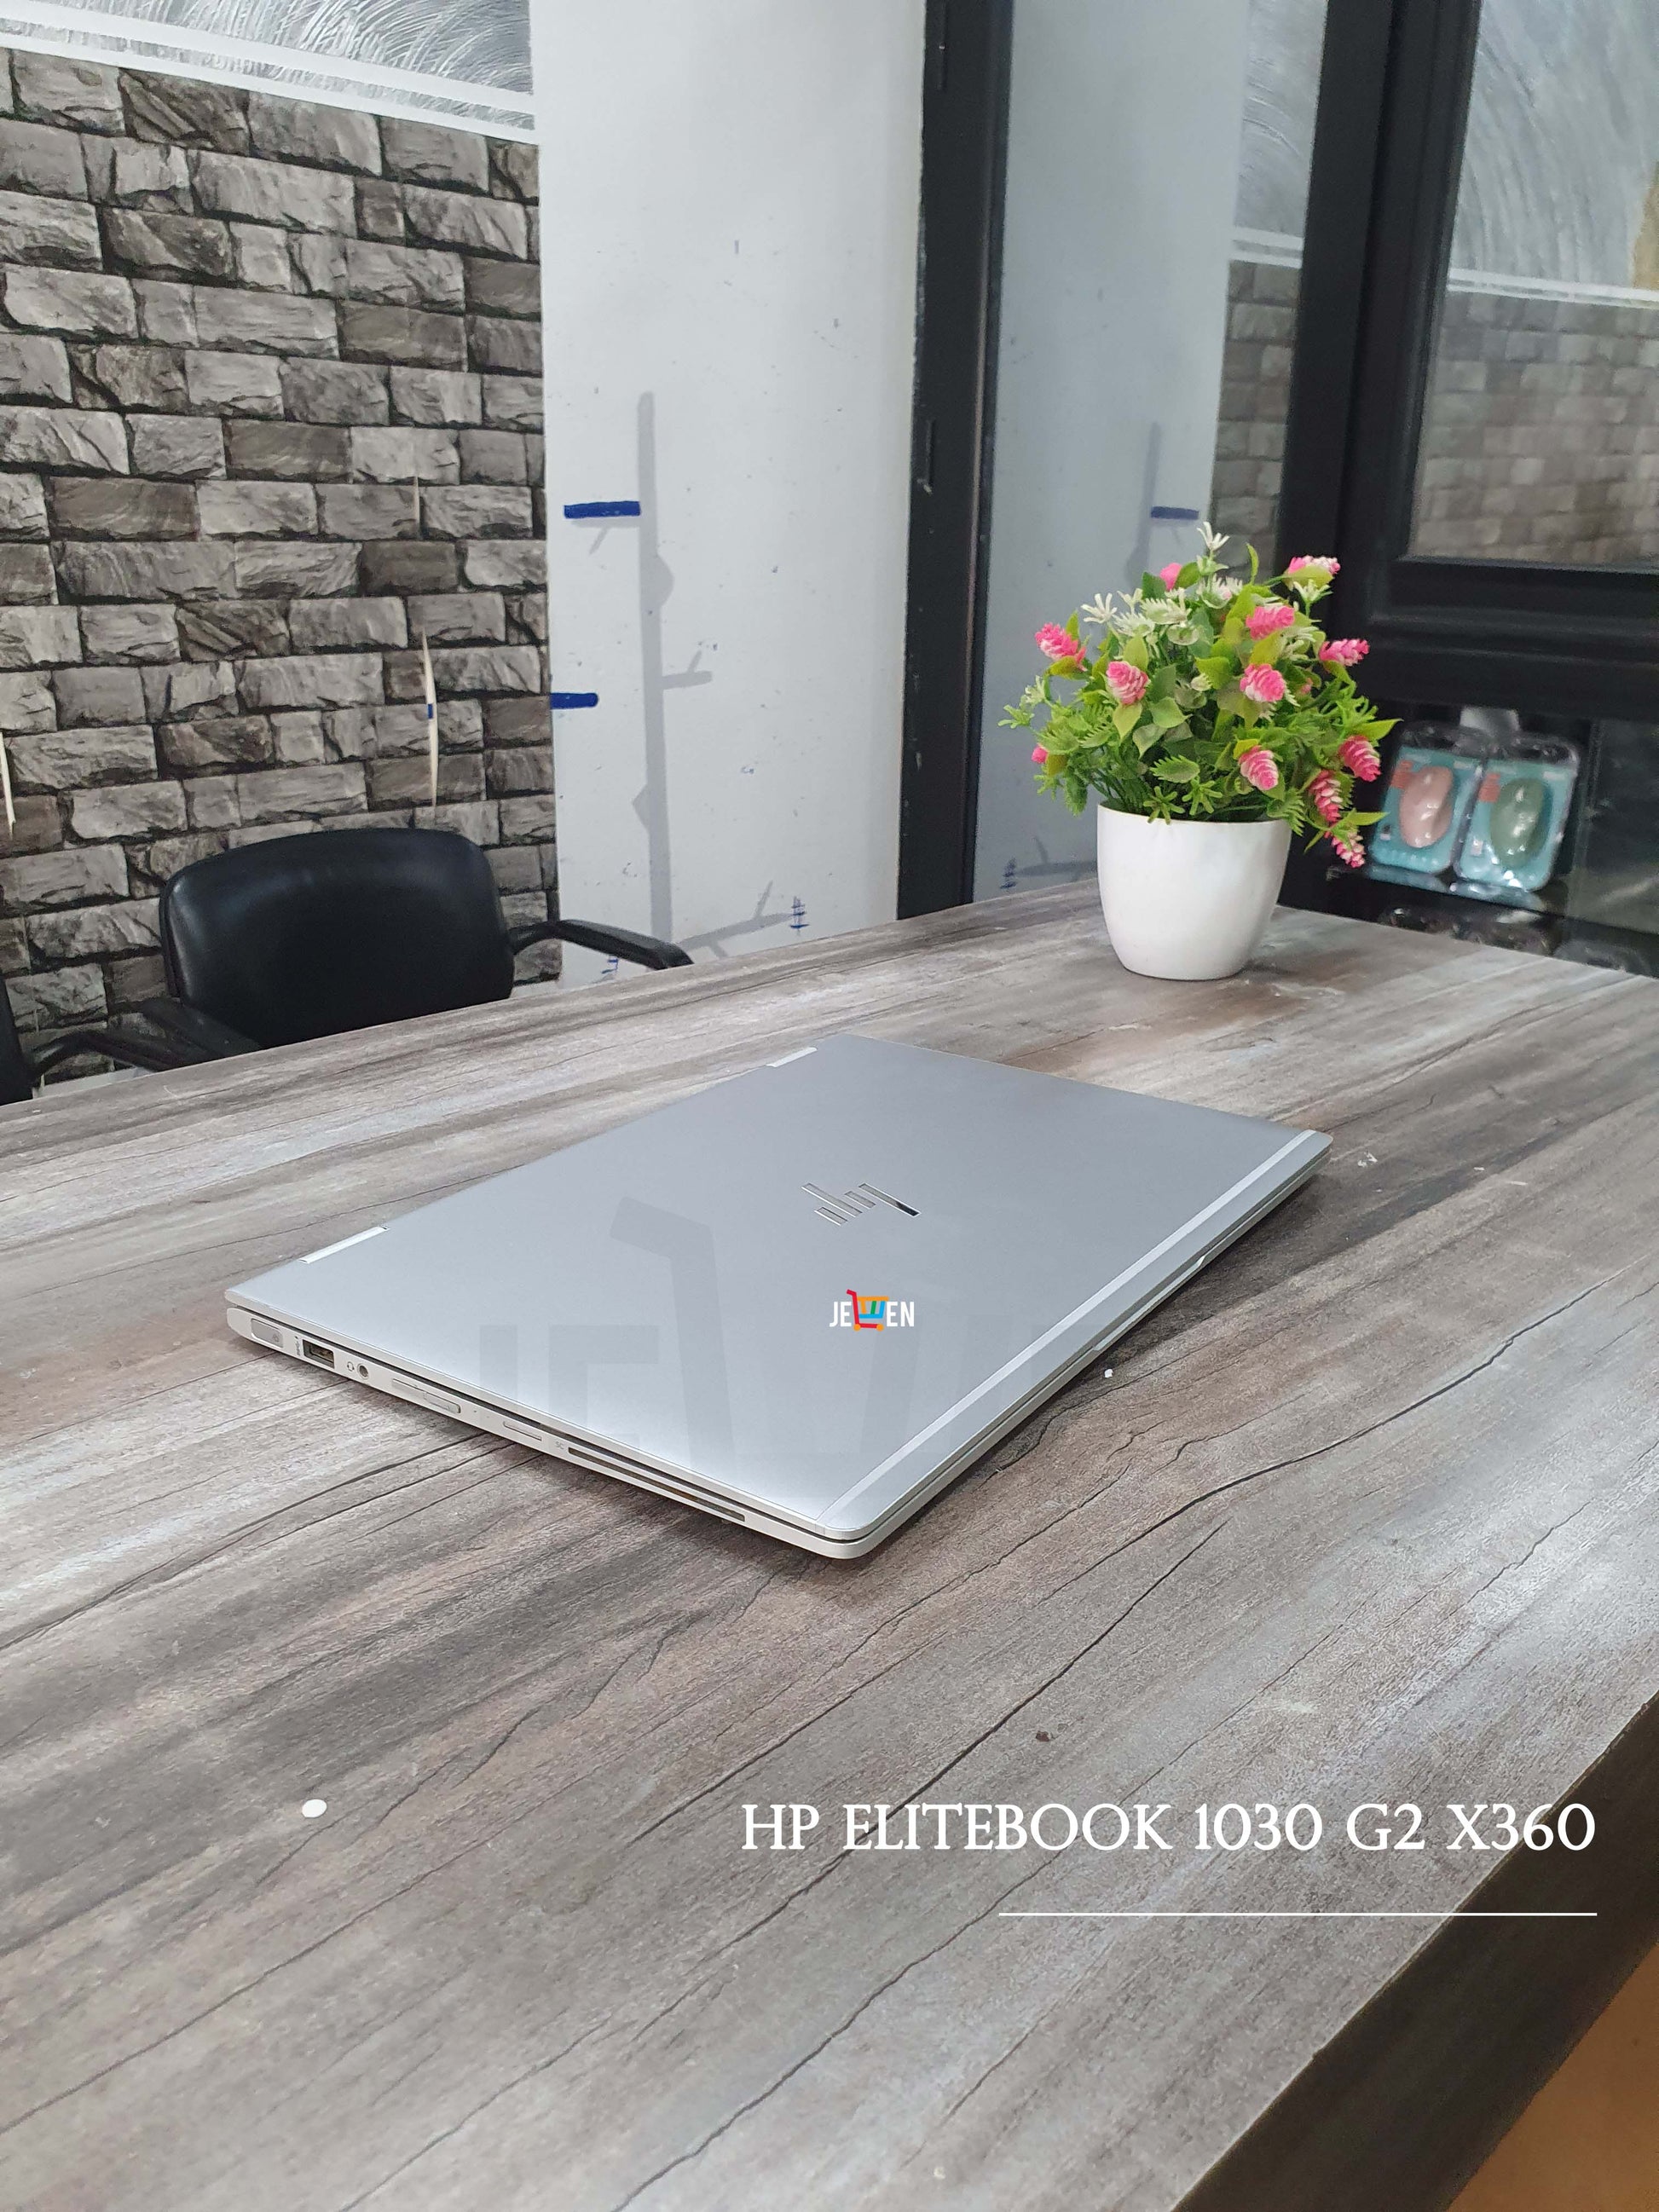 HP EliteBook 850 G5 15.6 Core i5  PC reconditionné à petit prix !